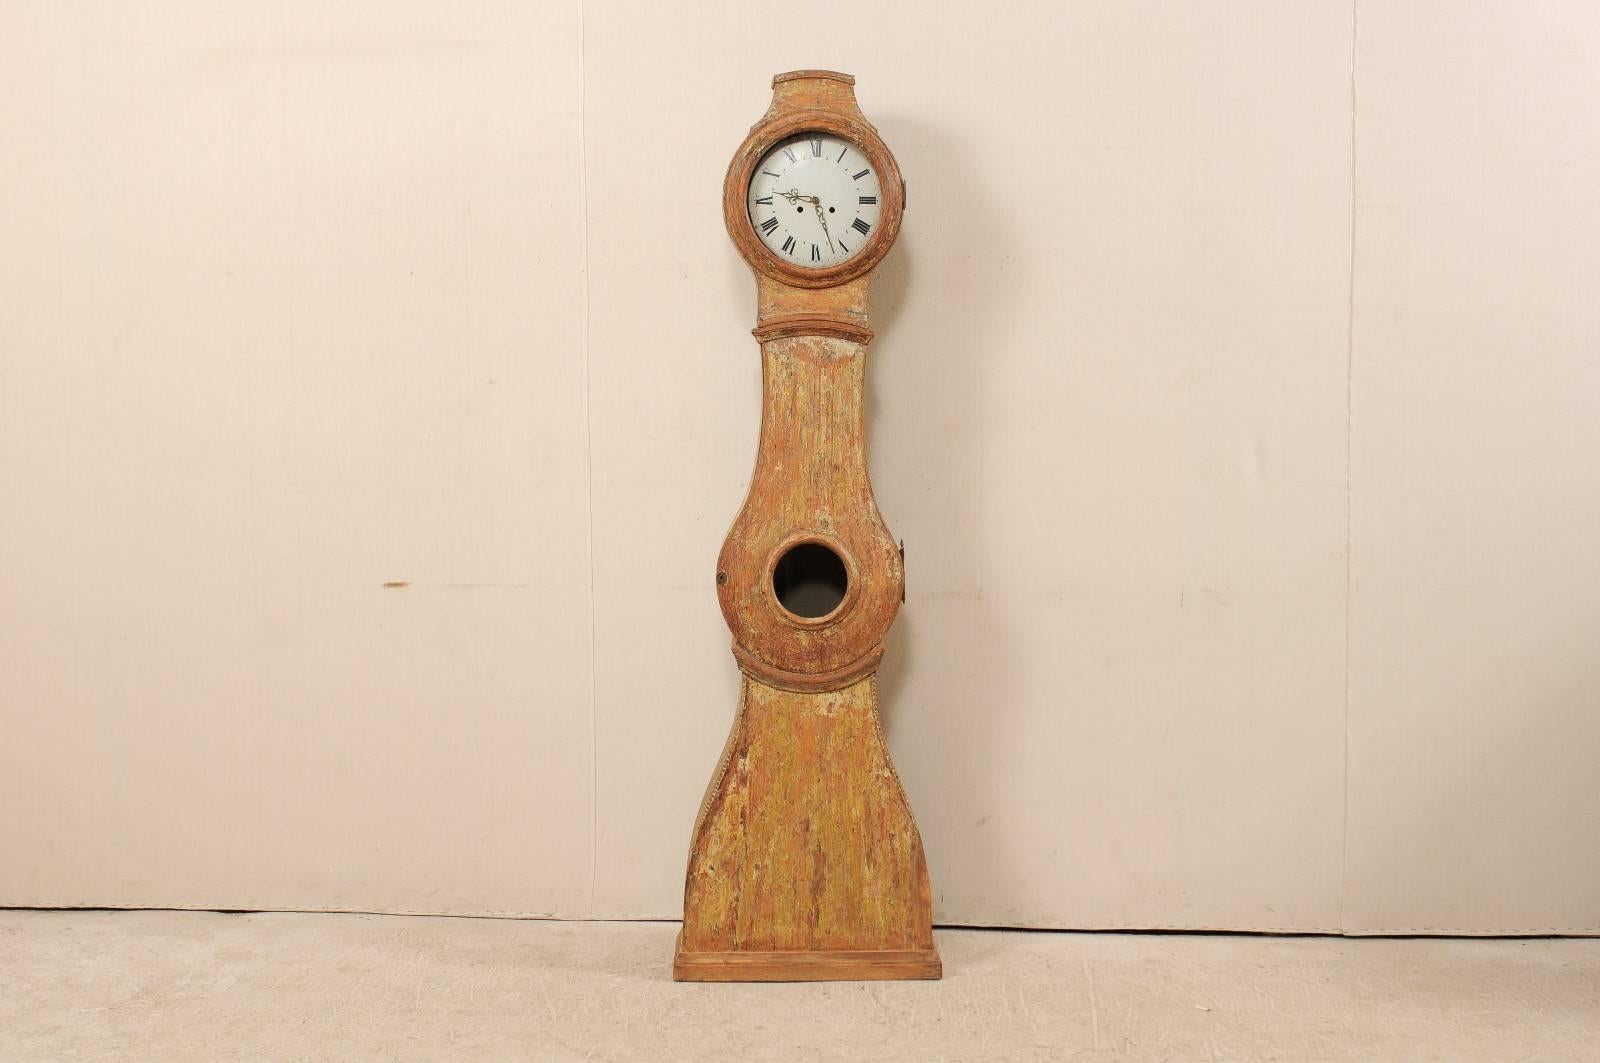 Horloge suédoise en bois peint du XIXe siècle. Cette horloge suédoise des années 1820 présente un visage rond, un écusson subtil et un corps en forme de goutte d'eau. Cette horloge a conservé son cadran, ses aiguilles et son mouvement en métal